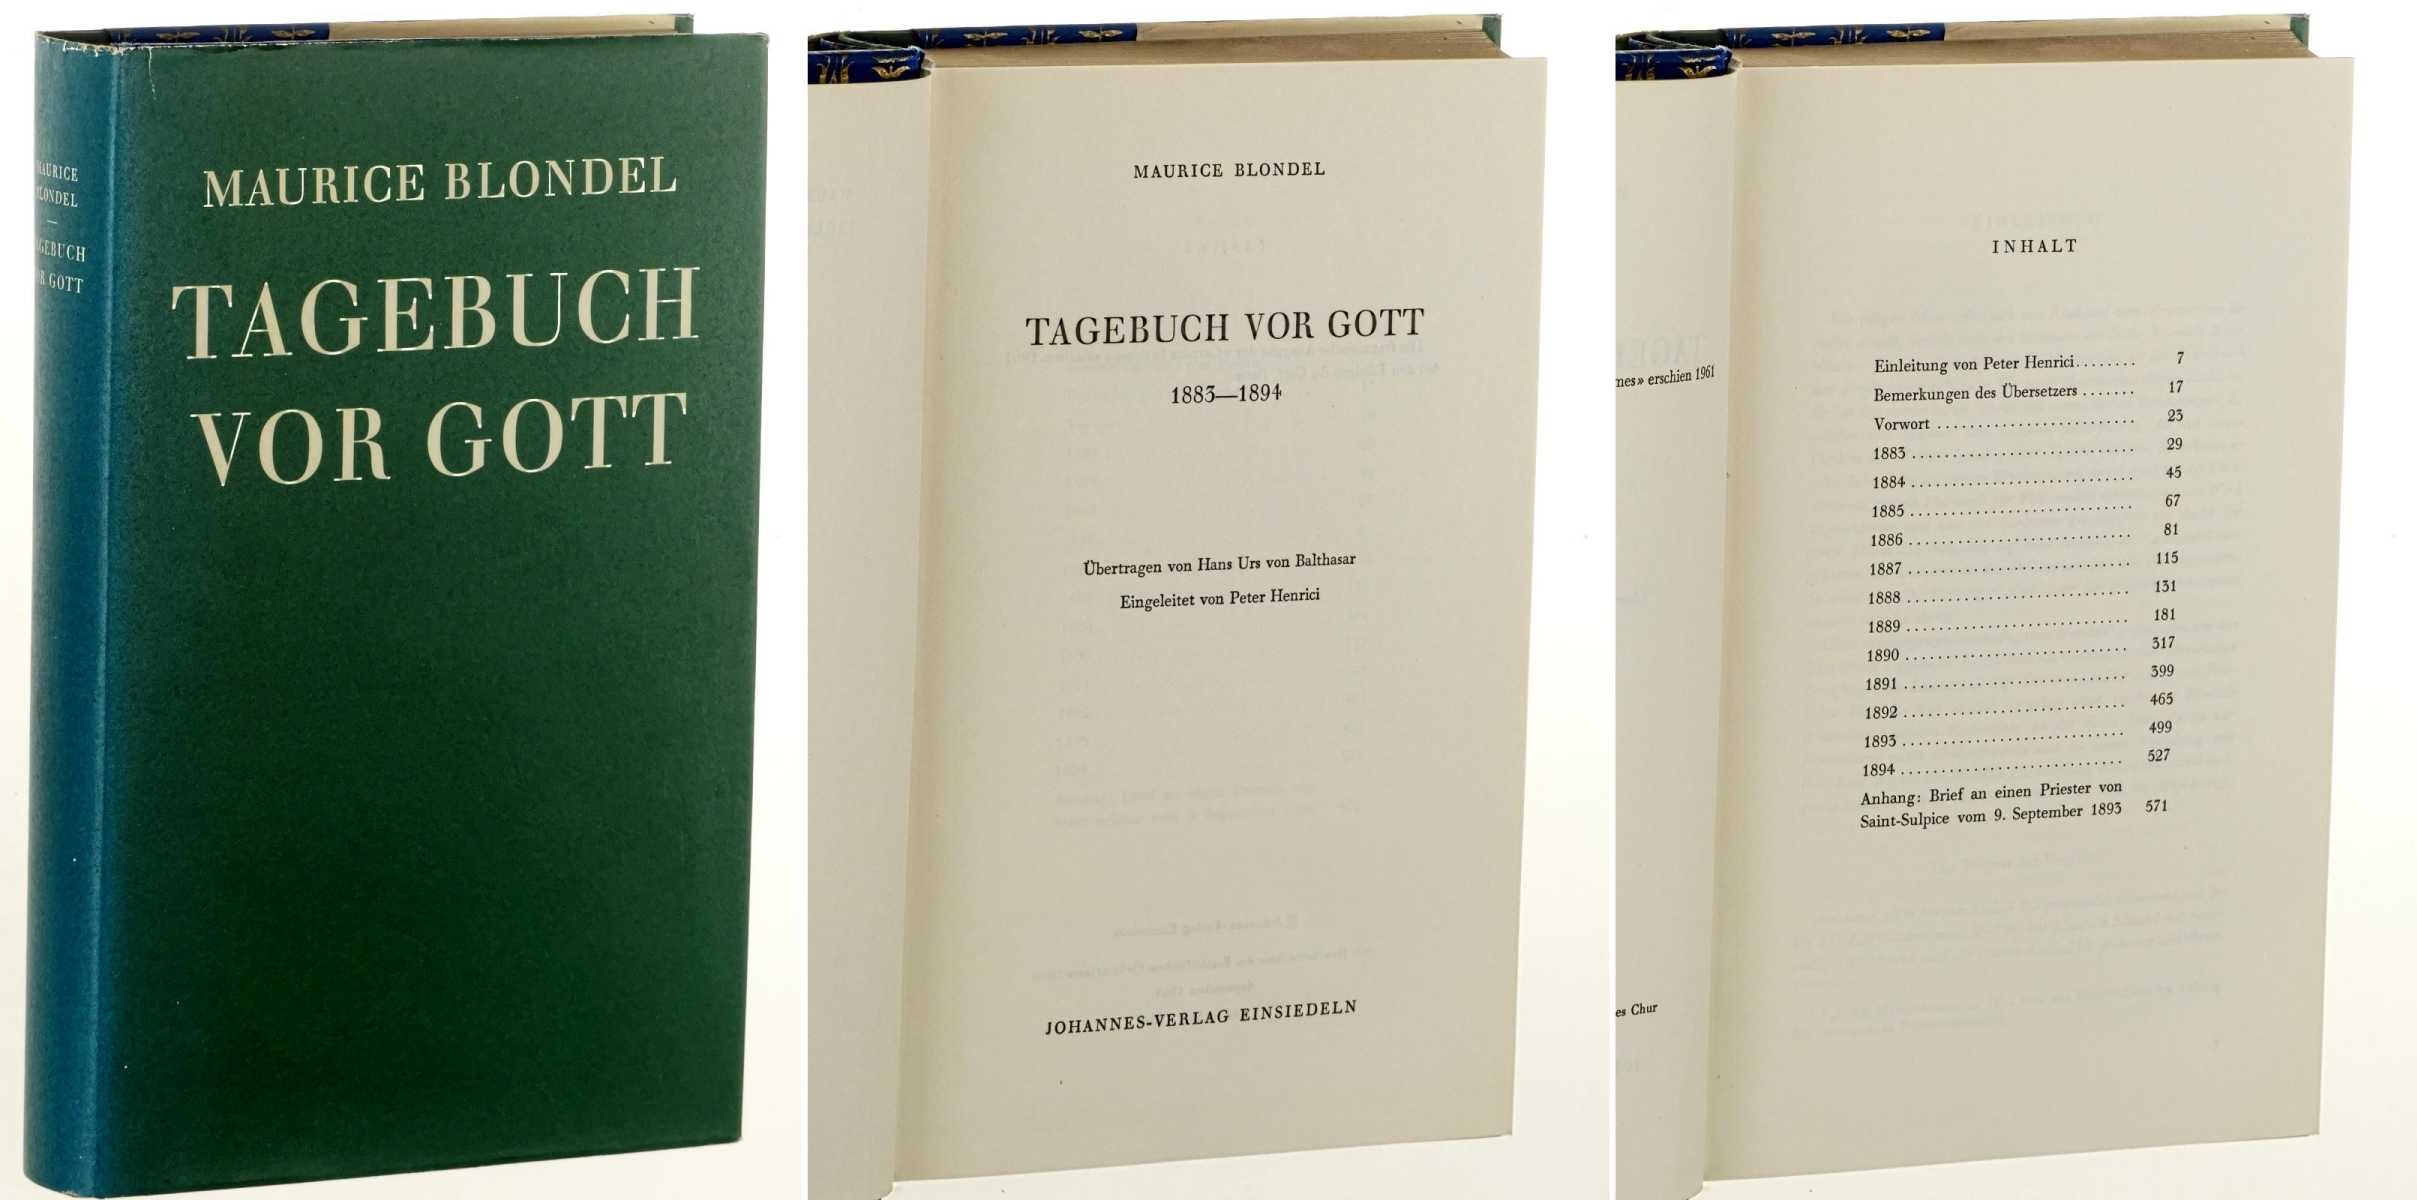 Blondel, Maurice:  Tagebuch vor Gott 1883-1894. Übertr. von Hans Urs von Balthasar. Eingel. von Peter Henrici. 